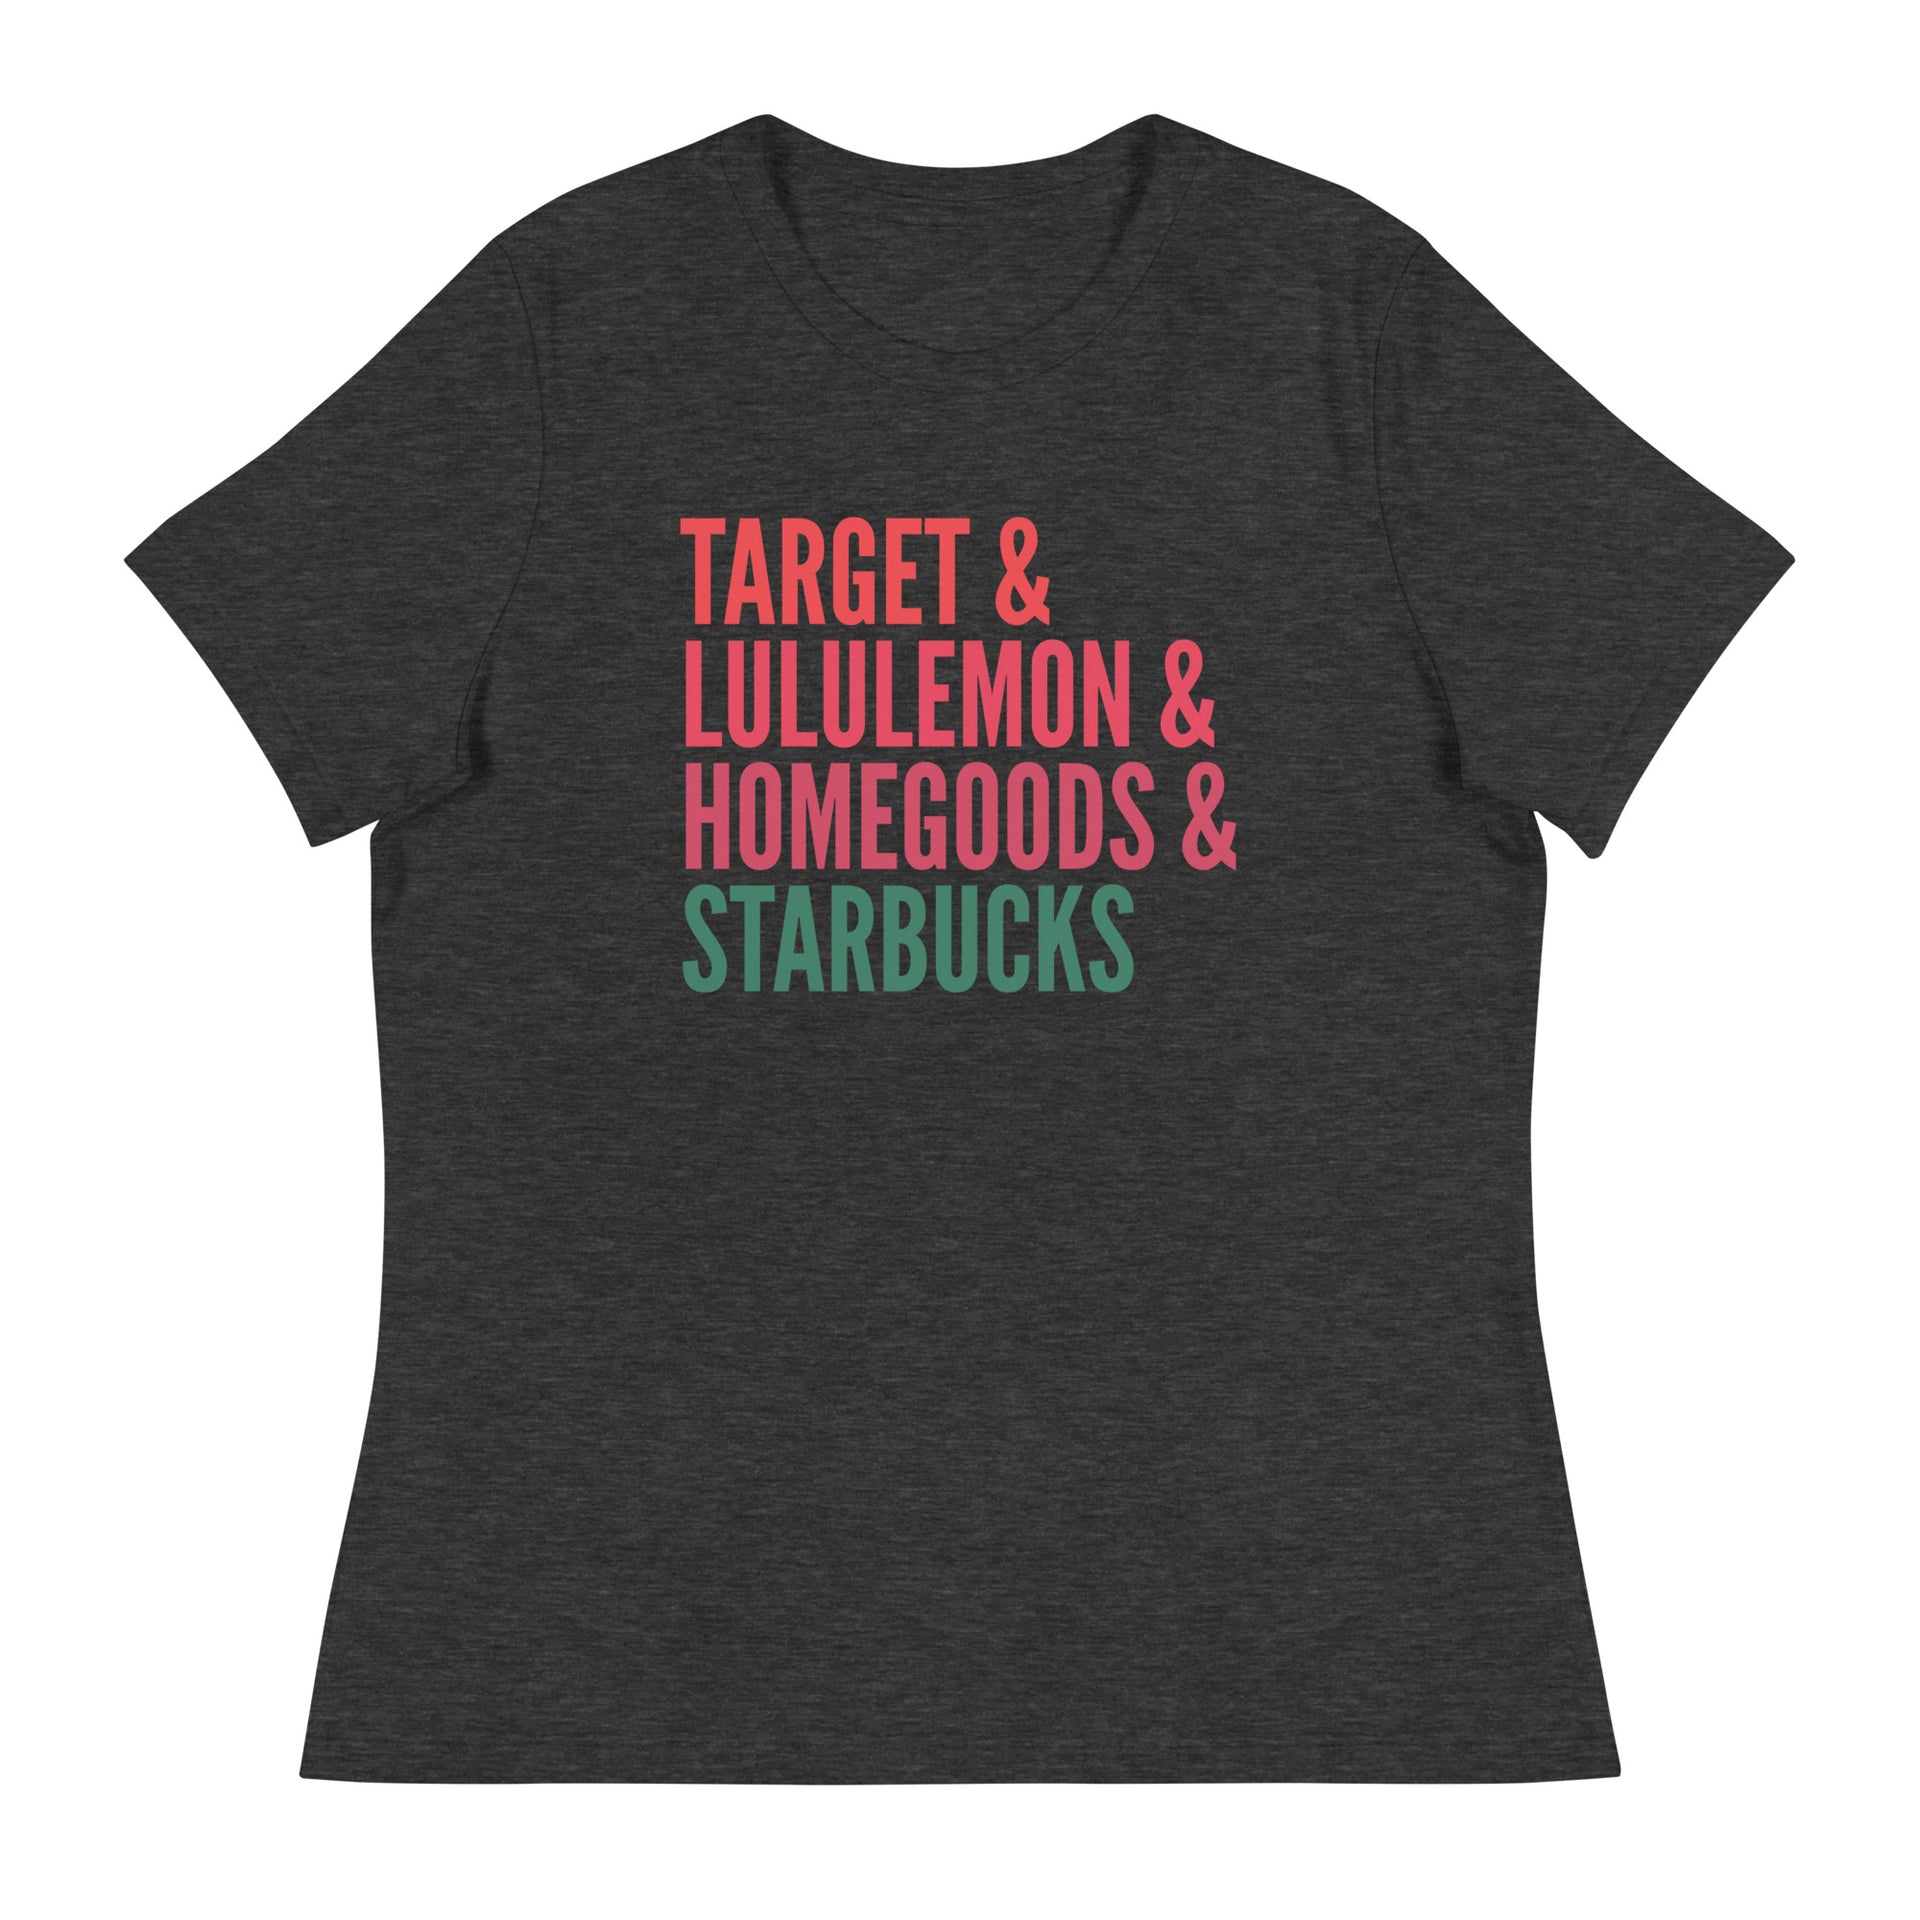 Target Lululemon Homegoods Starbucks Unisex Crewneck Sweater